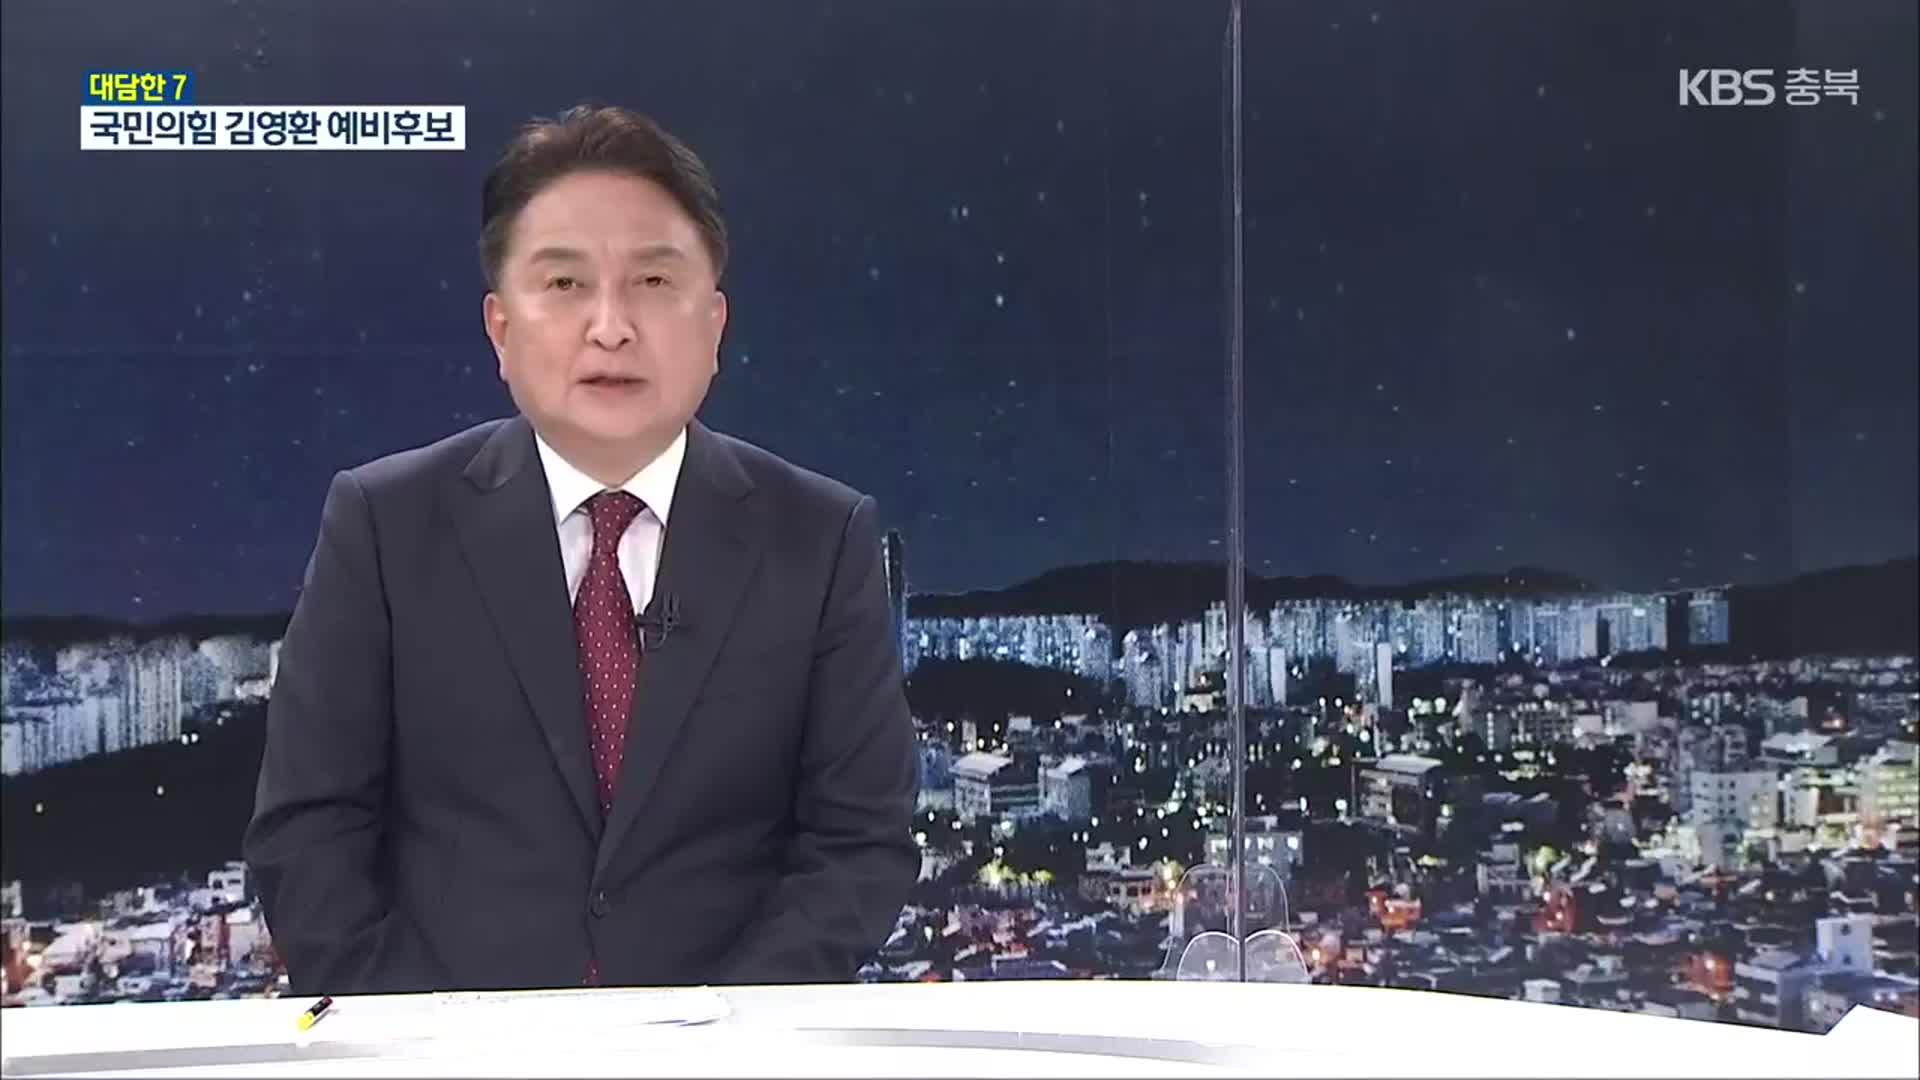 [대담한7] 김영환 국민의힘 충북지사 후보에게 듣는다